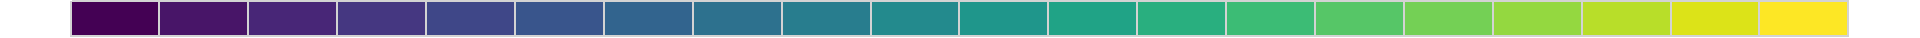 Palette viridis contenant 20 couleurs différentes